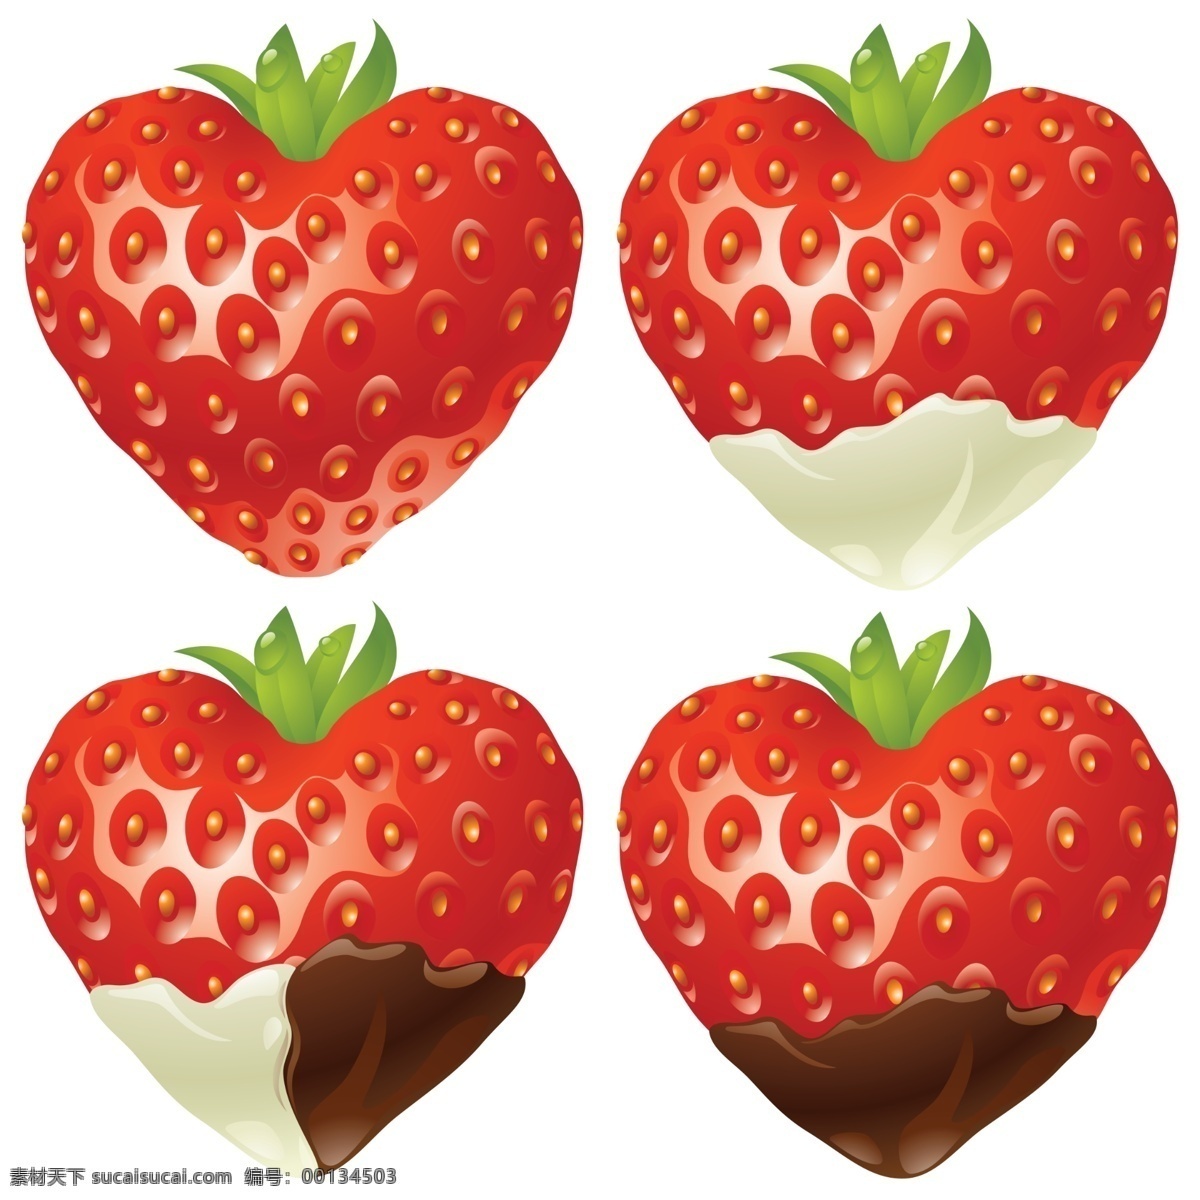 草莓 奶油草莓 奶油 巧克力 树莓 水果 心形草莓 爱心 超市水果 特写 高清 绿叶 叶子 新鲜水果 红色 微距 花托 大棚水果 生物世界 手绘 背景分层 白色背景 蔬果 分层 源文件